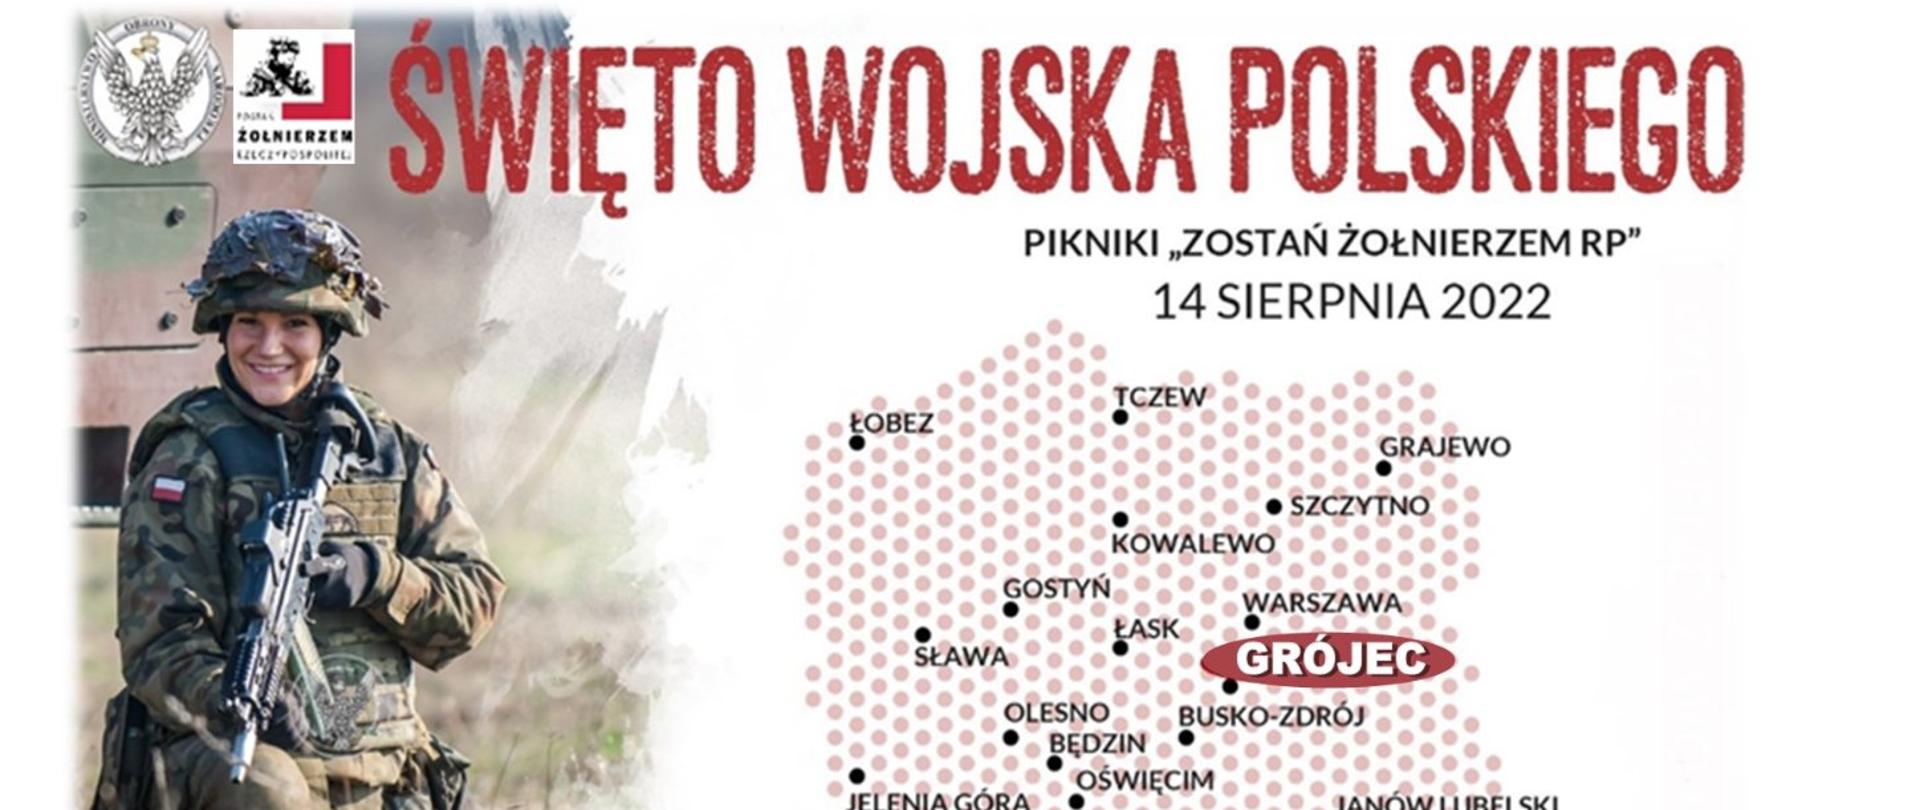 Zaproszenie na Święto Wojska Polskiego - plakat